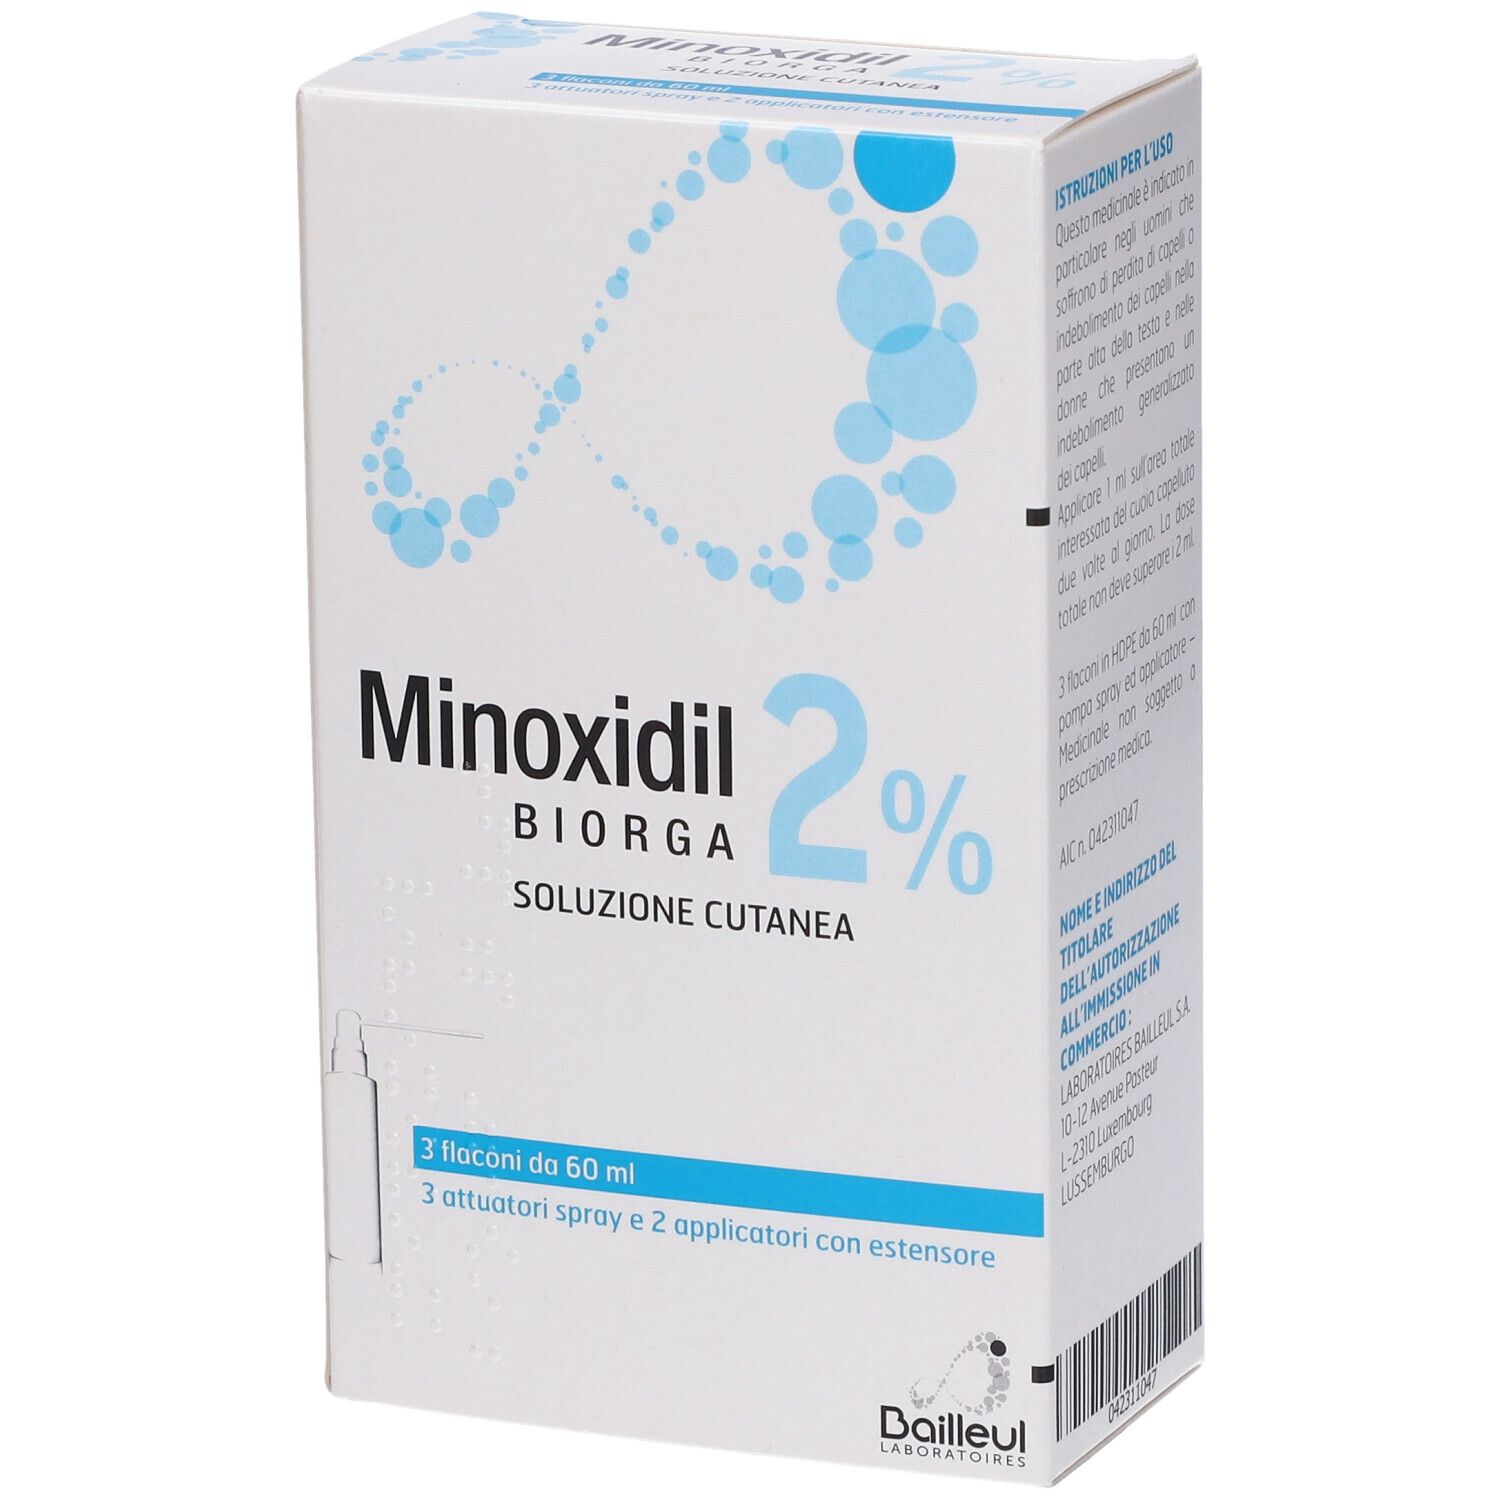 Laboratoires Bailleul S.a. Minoxidil Biorga 2% soluzione cutanea 3x60 ml Soluzione